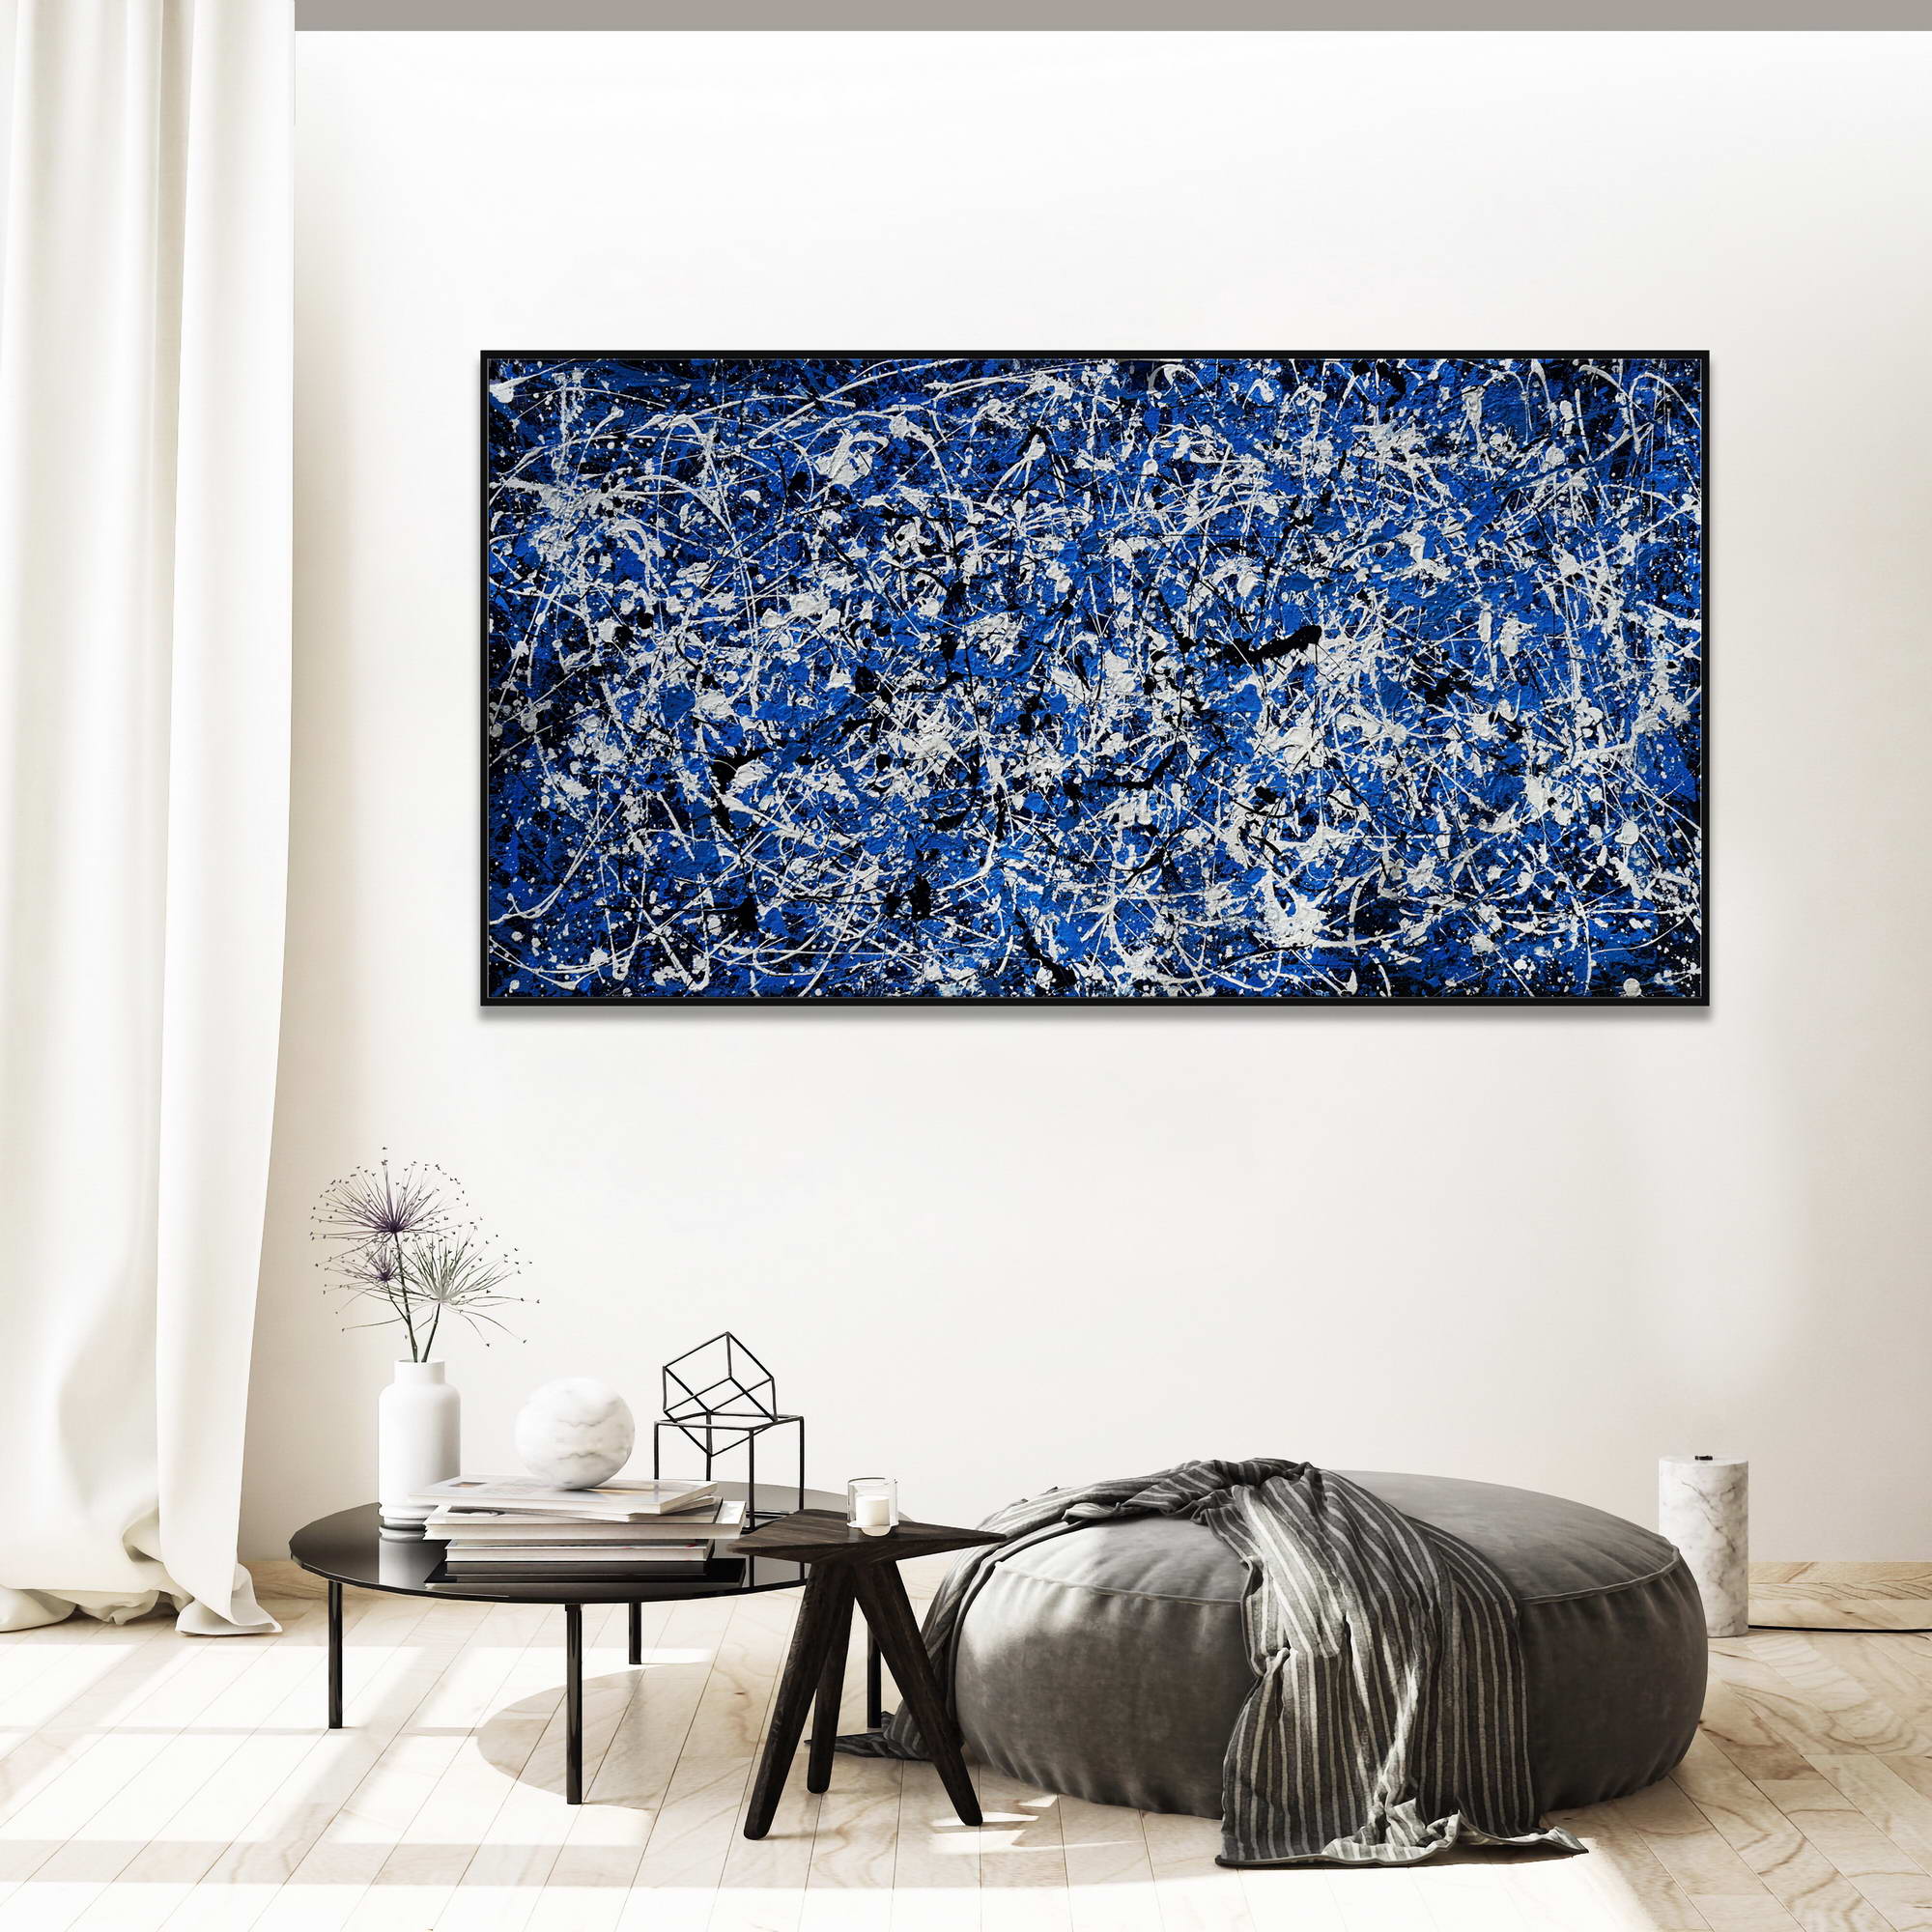 Dipinto a mano Composizione Astratta in Blu stile Pollock 75x150cm